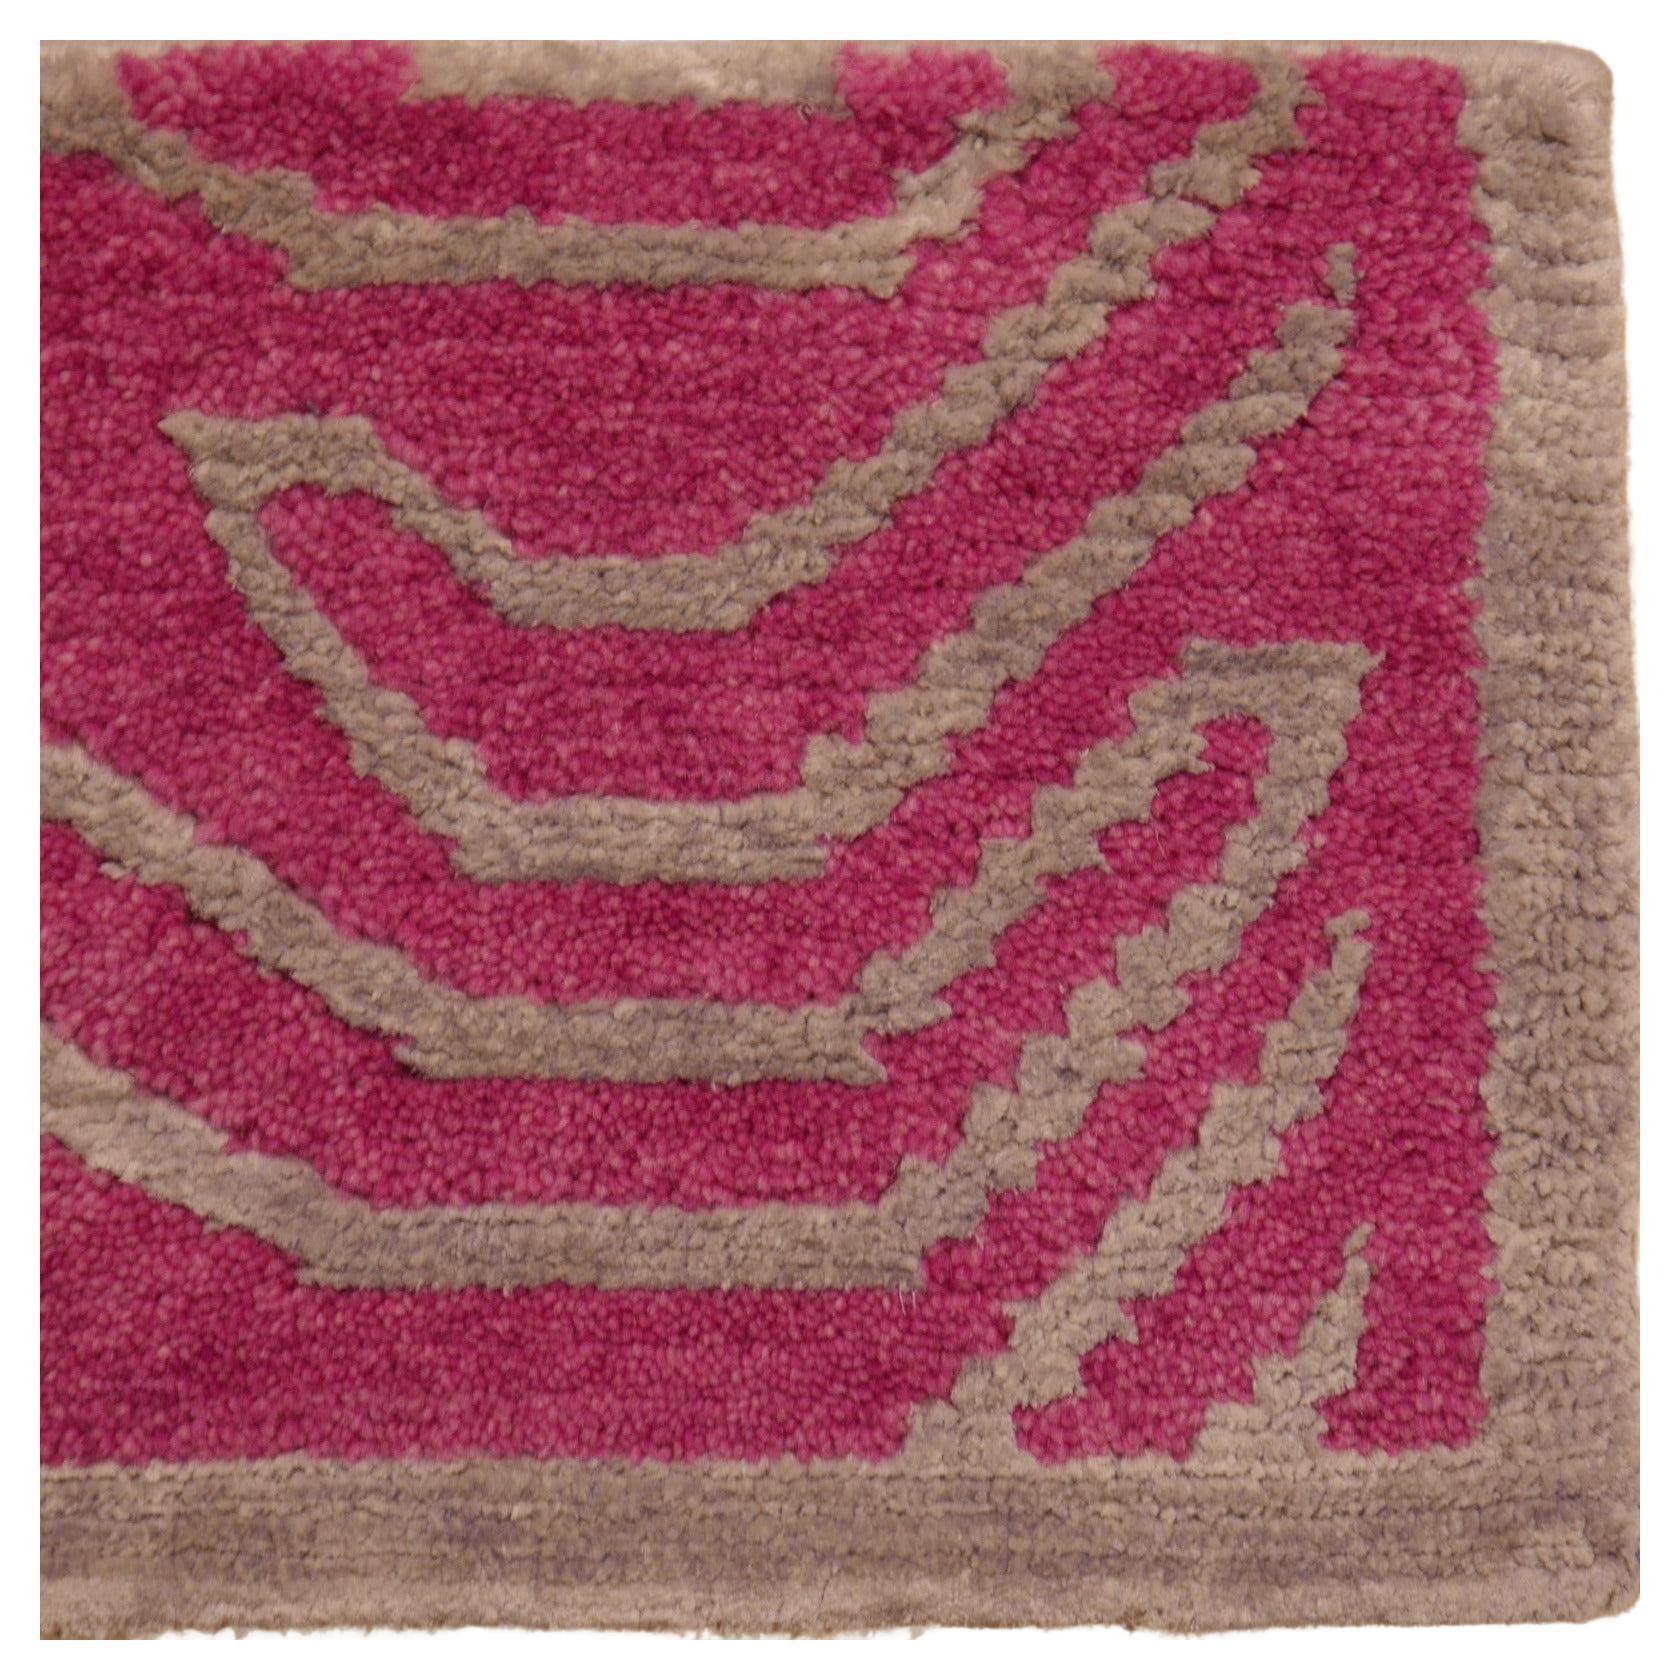 Tibetischer Tigermuster-Teppich aus Wolle und Seide, handgeknüpft, rosa und silber, Djoharian, Kollektion